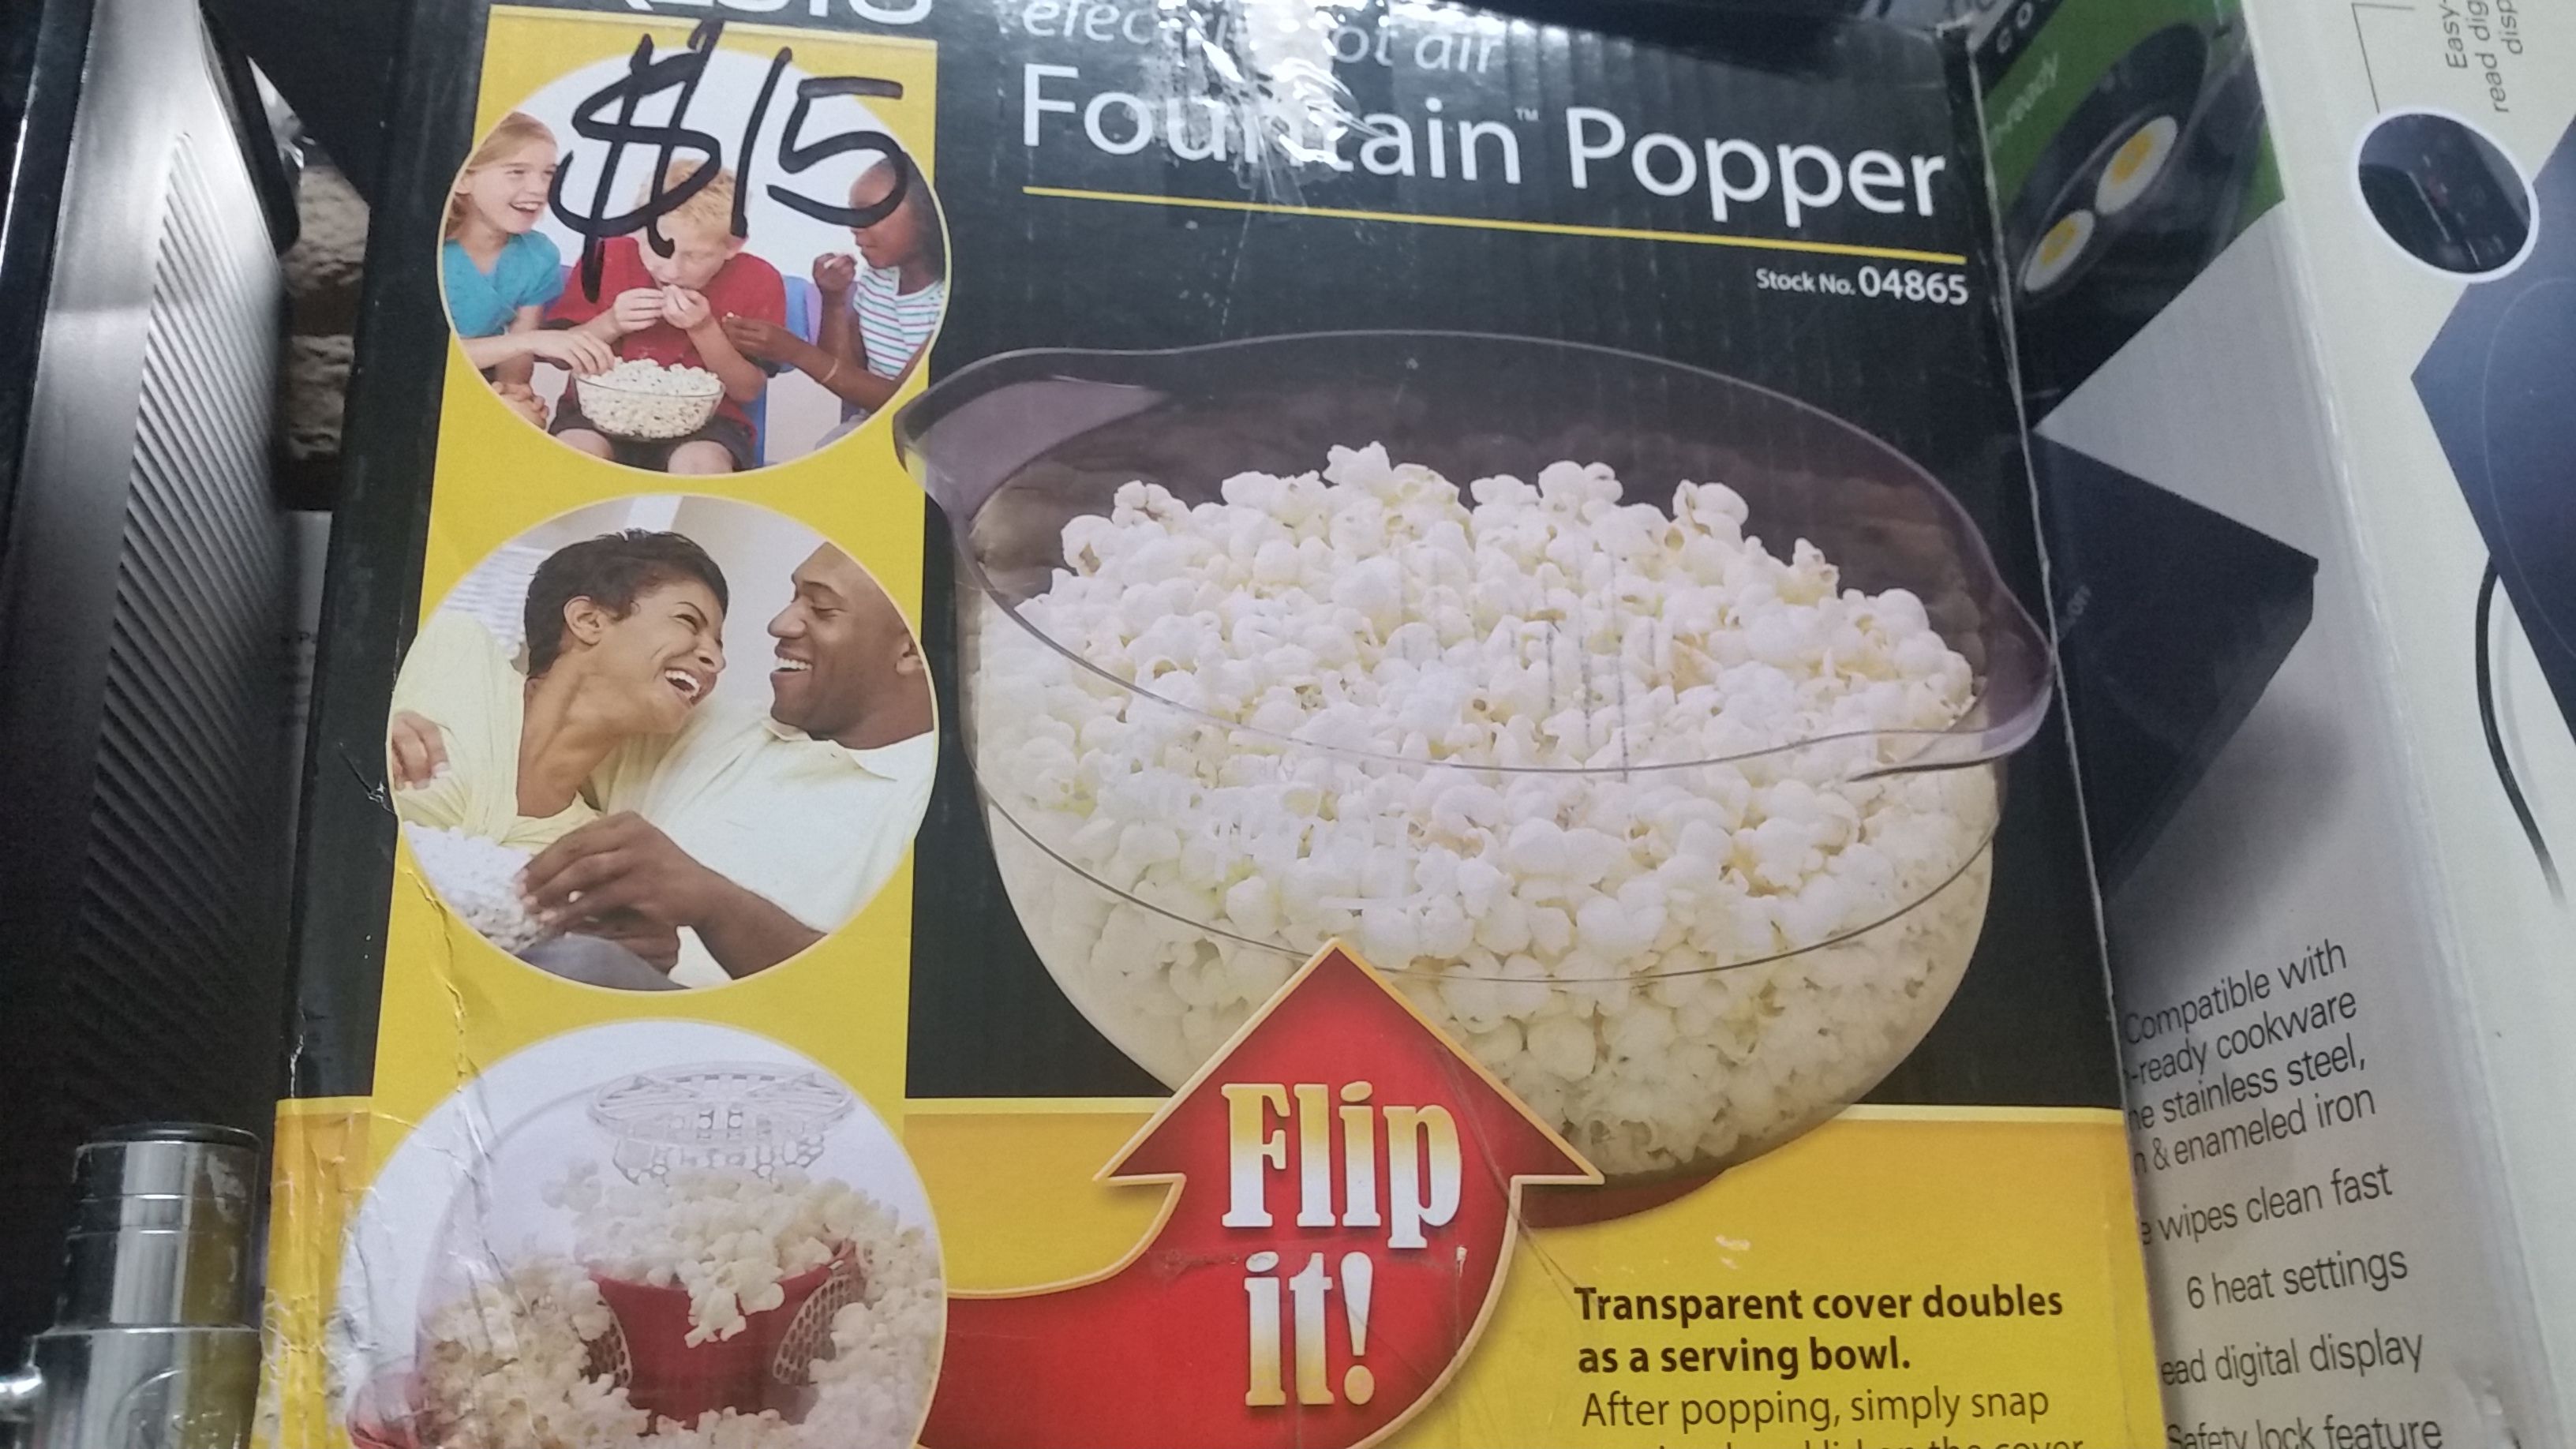 Fountain popper in box